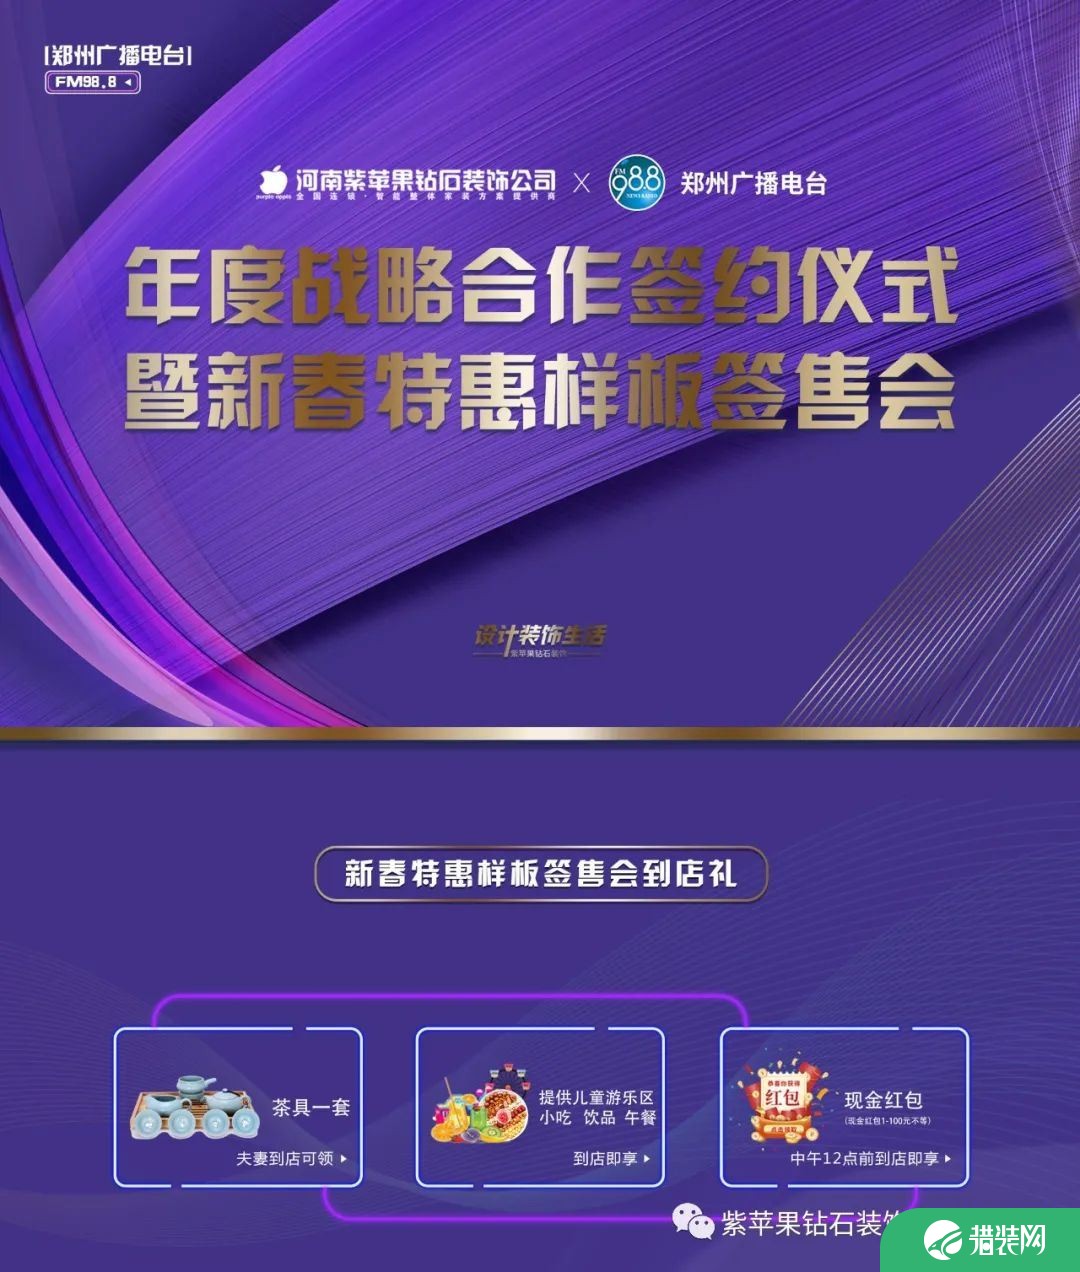 郑州紫苹果装饰公司活动图